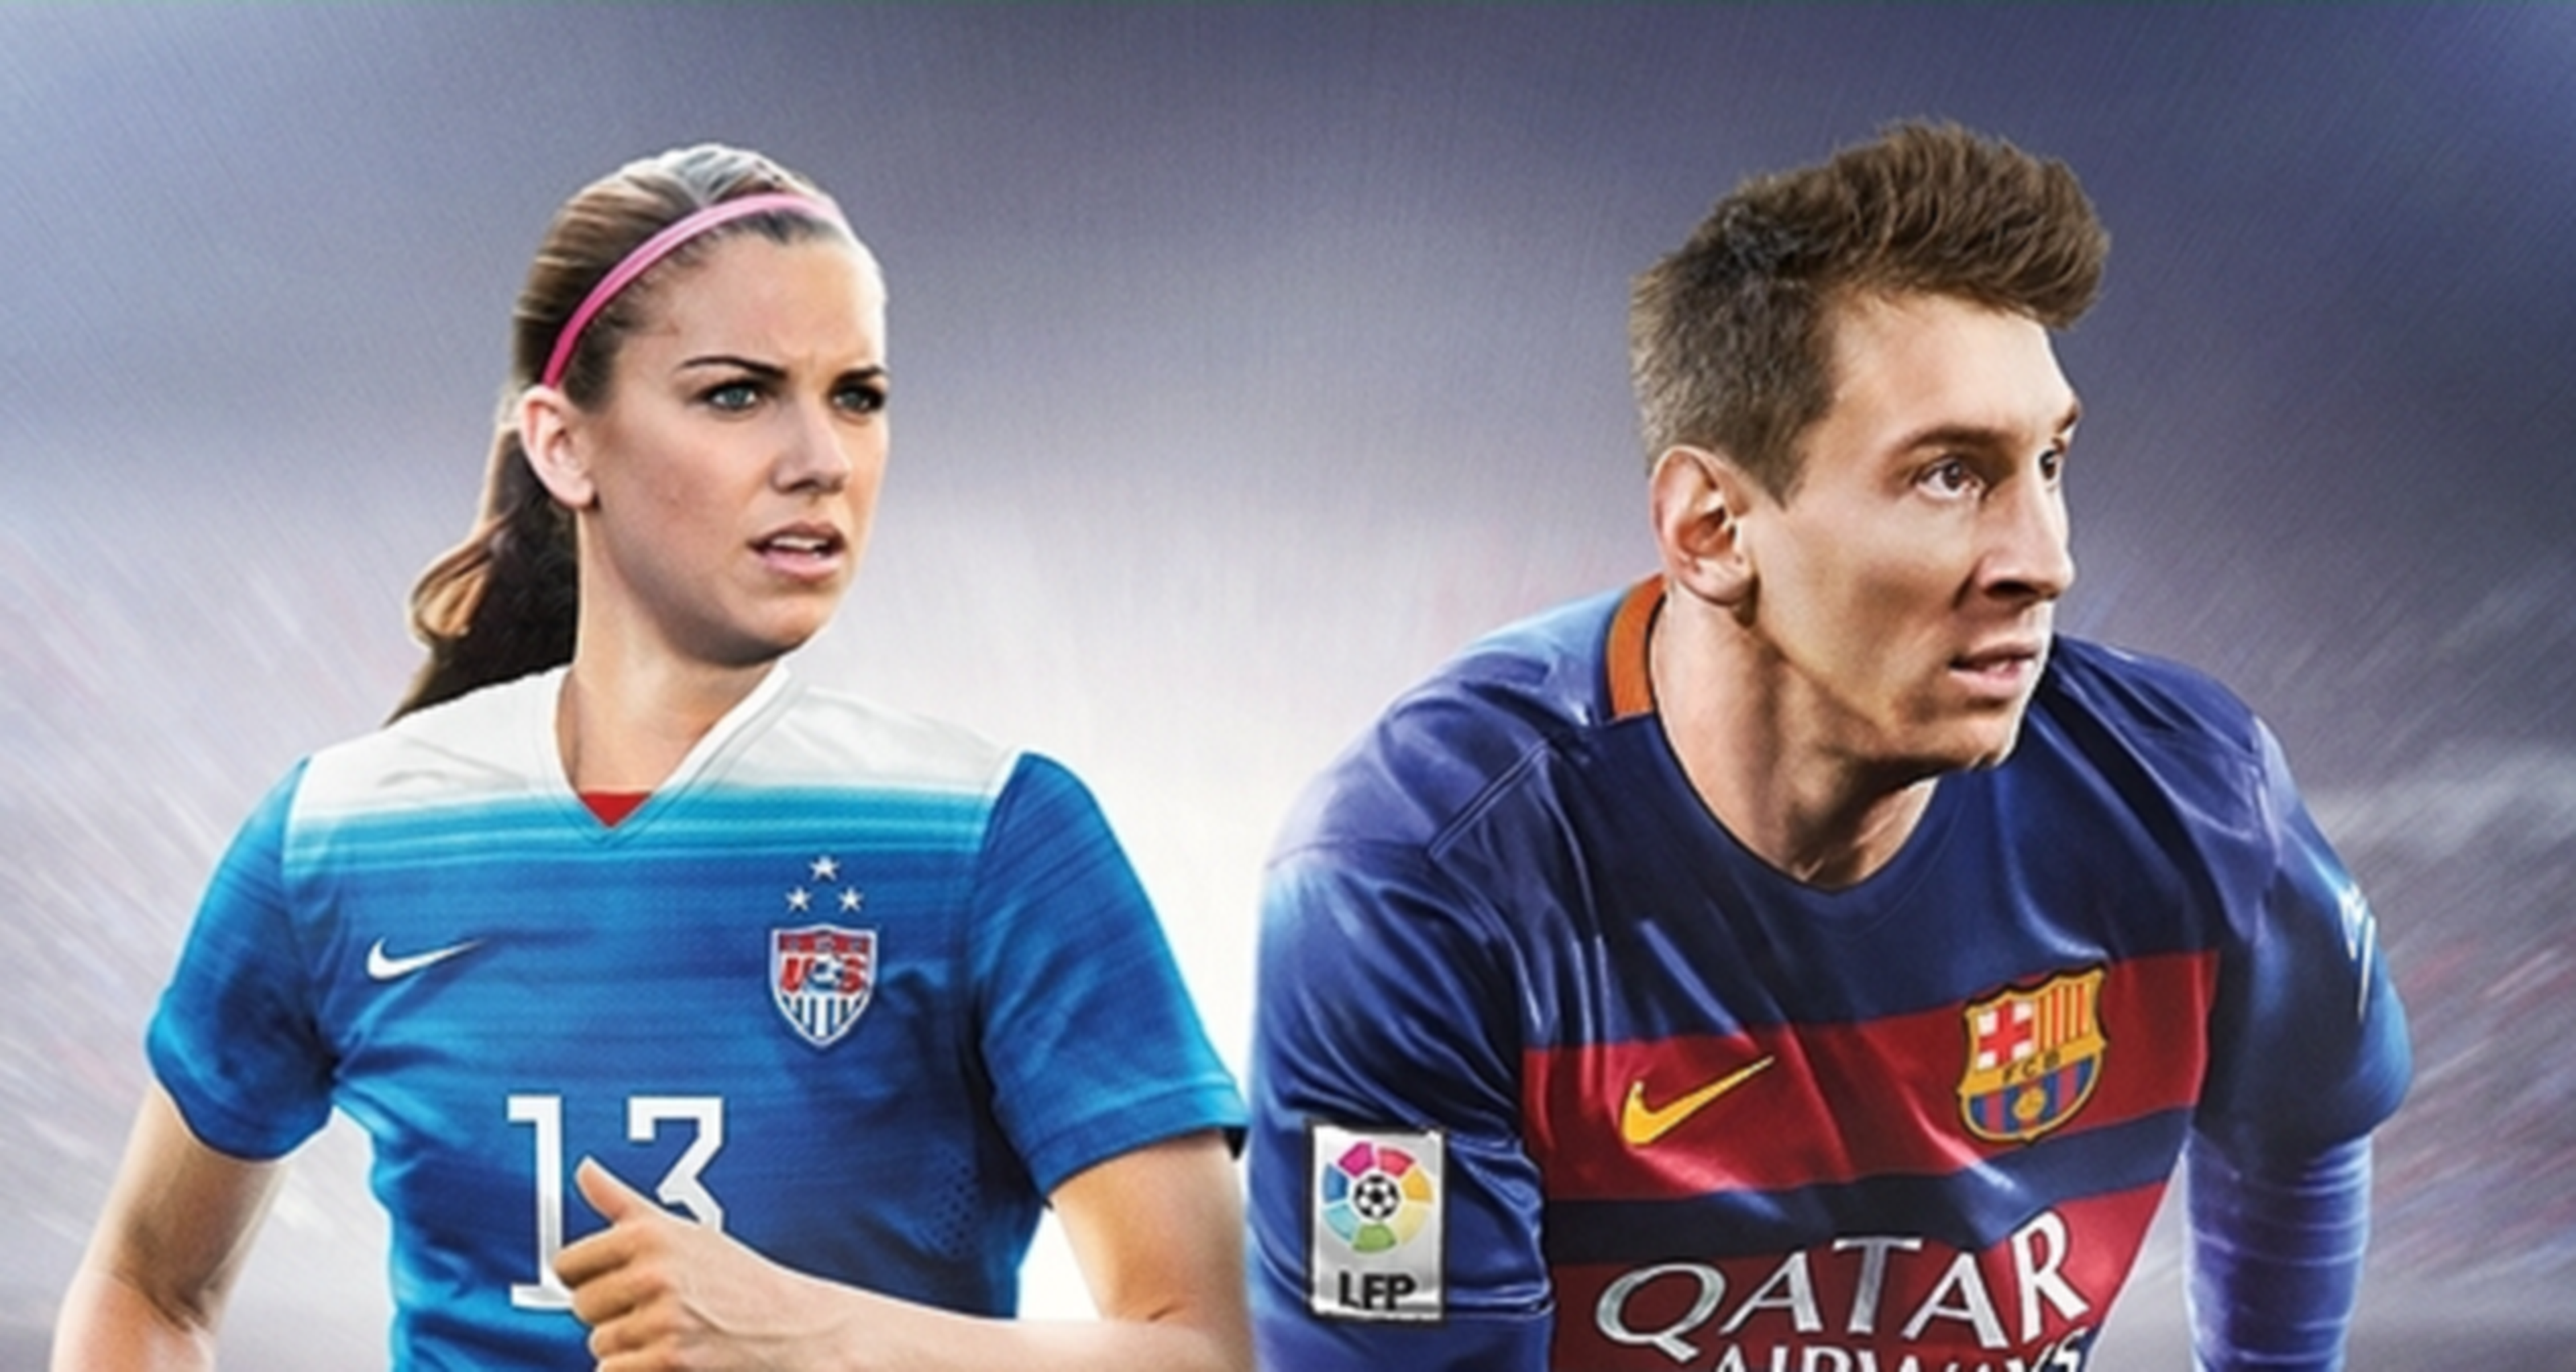 FIFA 17 promete mejoras en la personalización y la competición